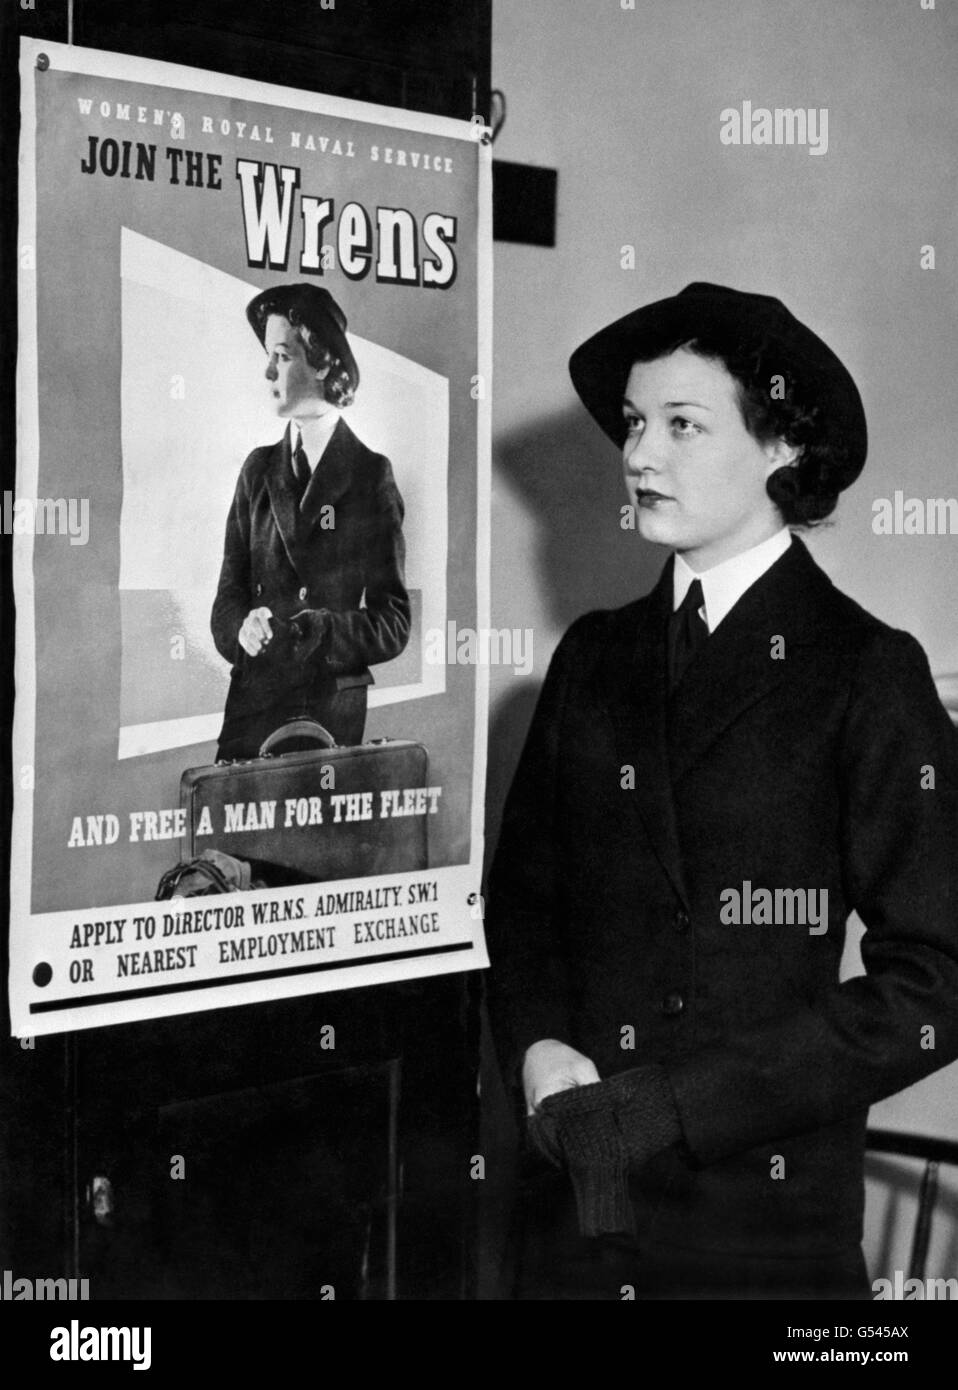 L'attuale Wren (un membro del Royal Naval Service delle Donne) che è stato scelto come modello adatto per questo poster di reclutamento. Foto Stock